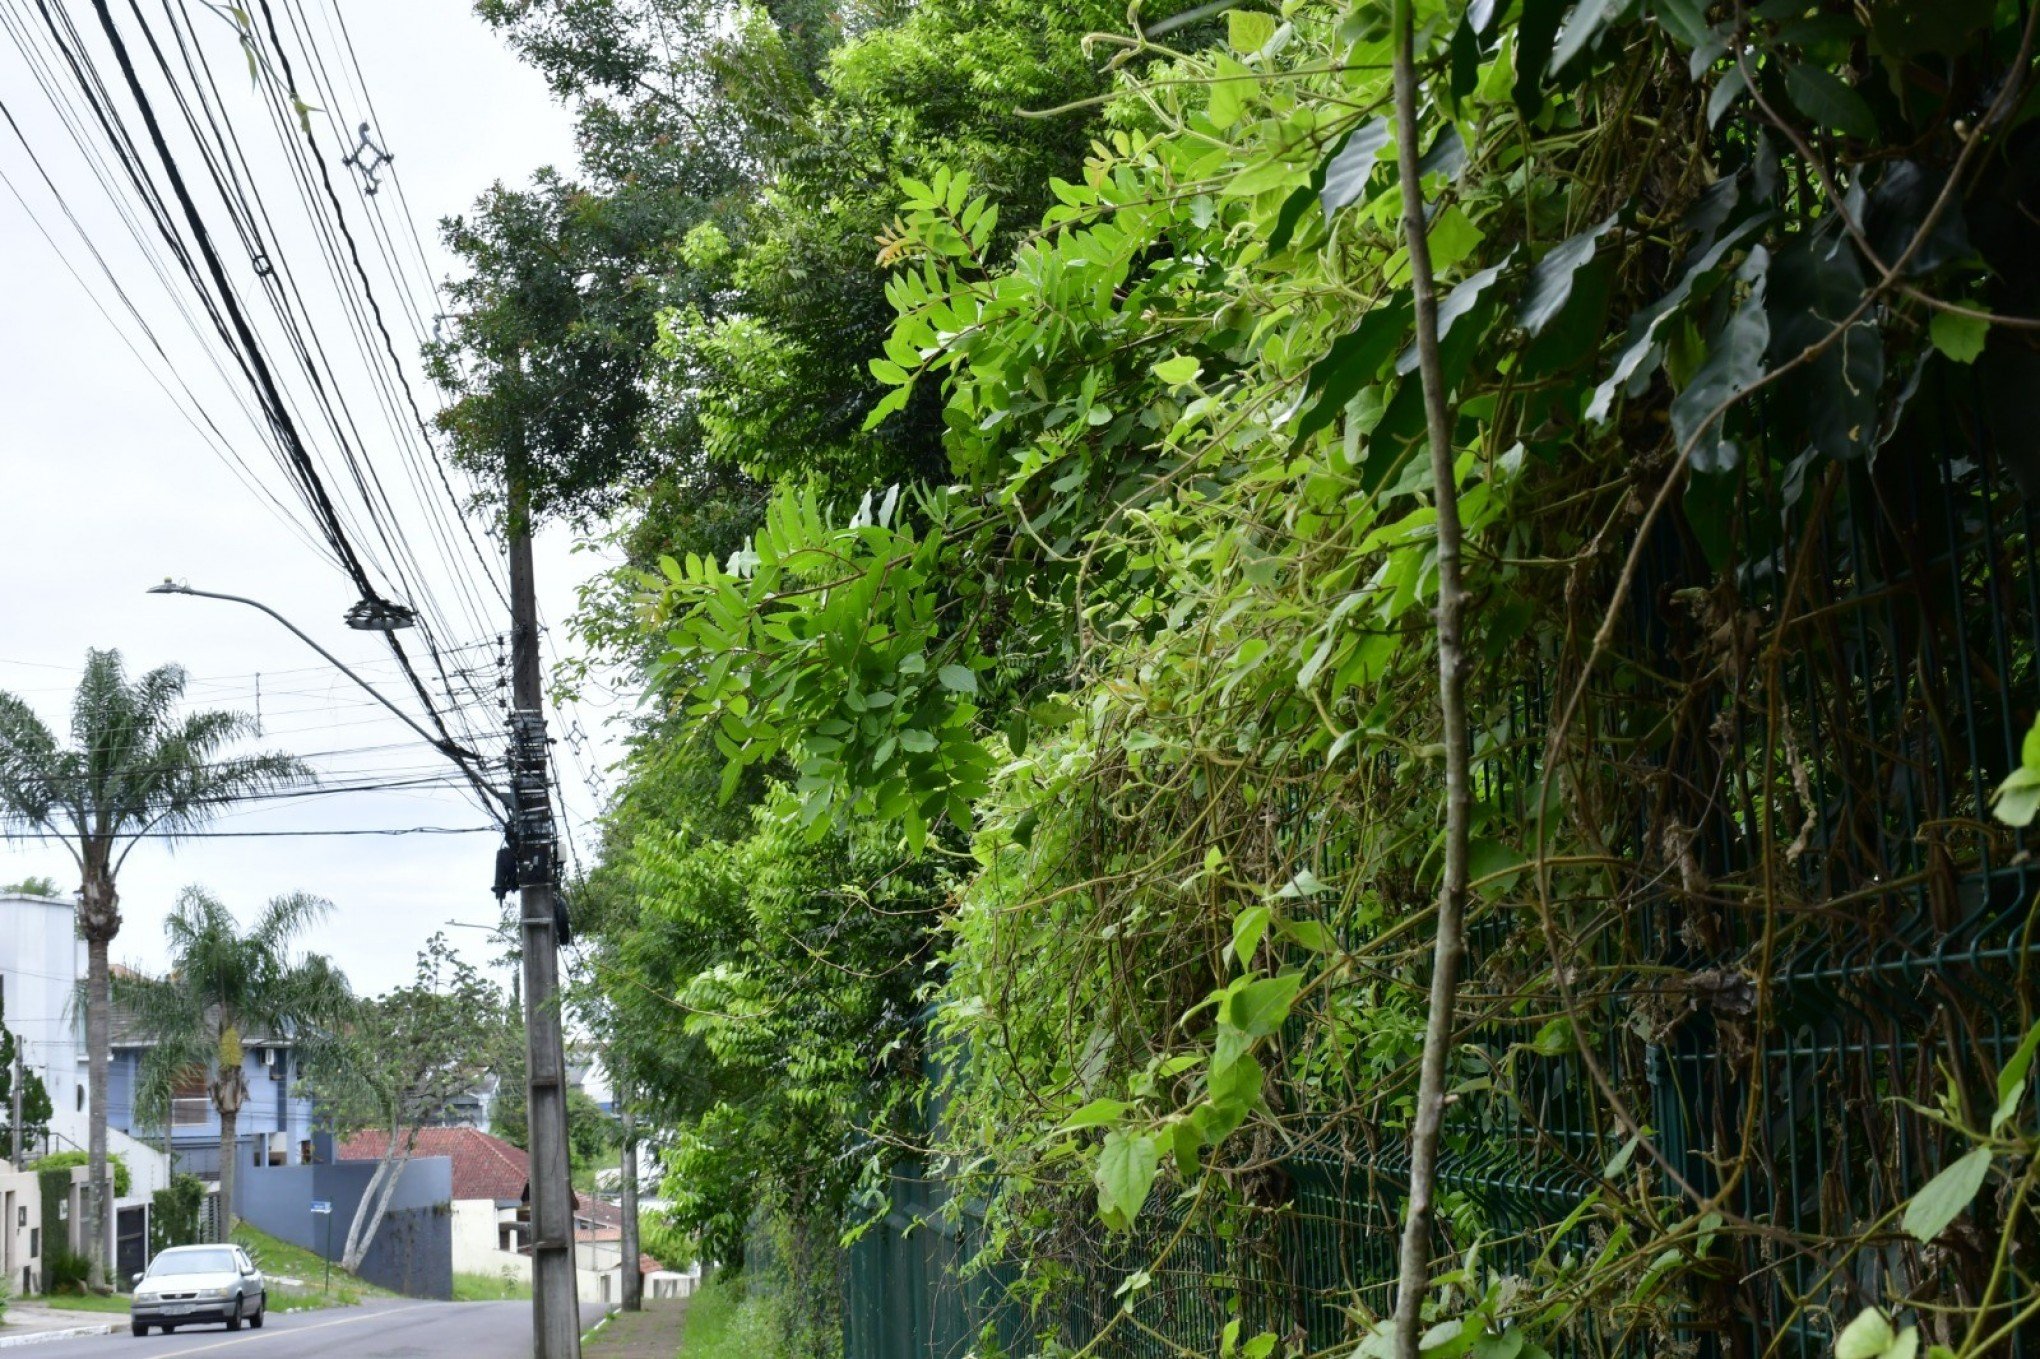 DERRUBADA DE ÁRVORES NO PARCÃO: Prefeitura diz que processo é acompanhado por equipe de arborização